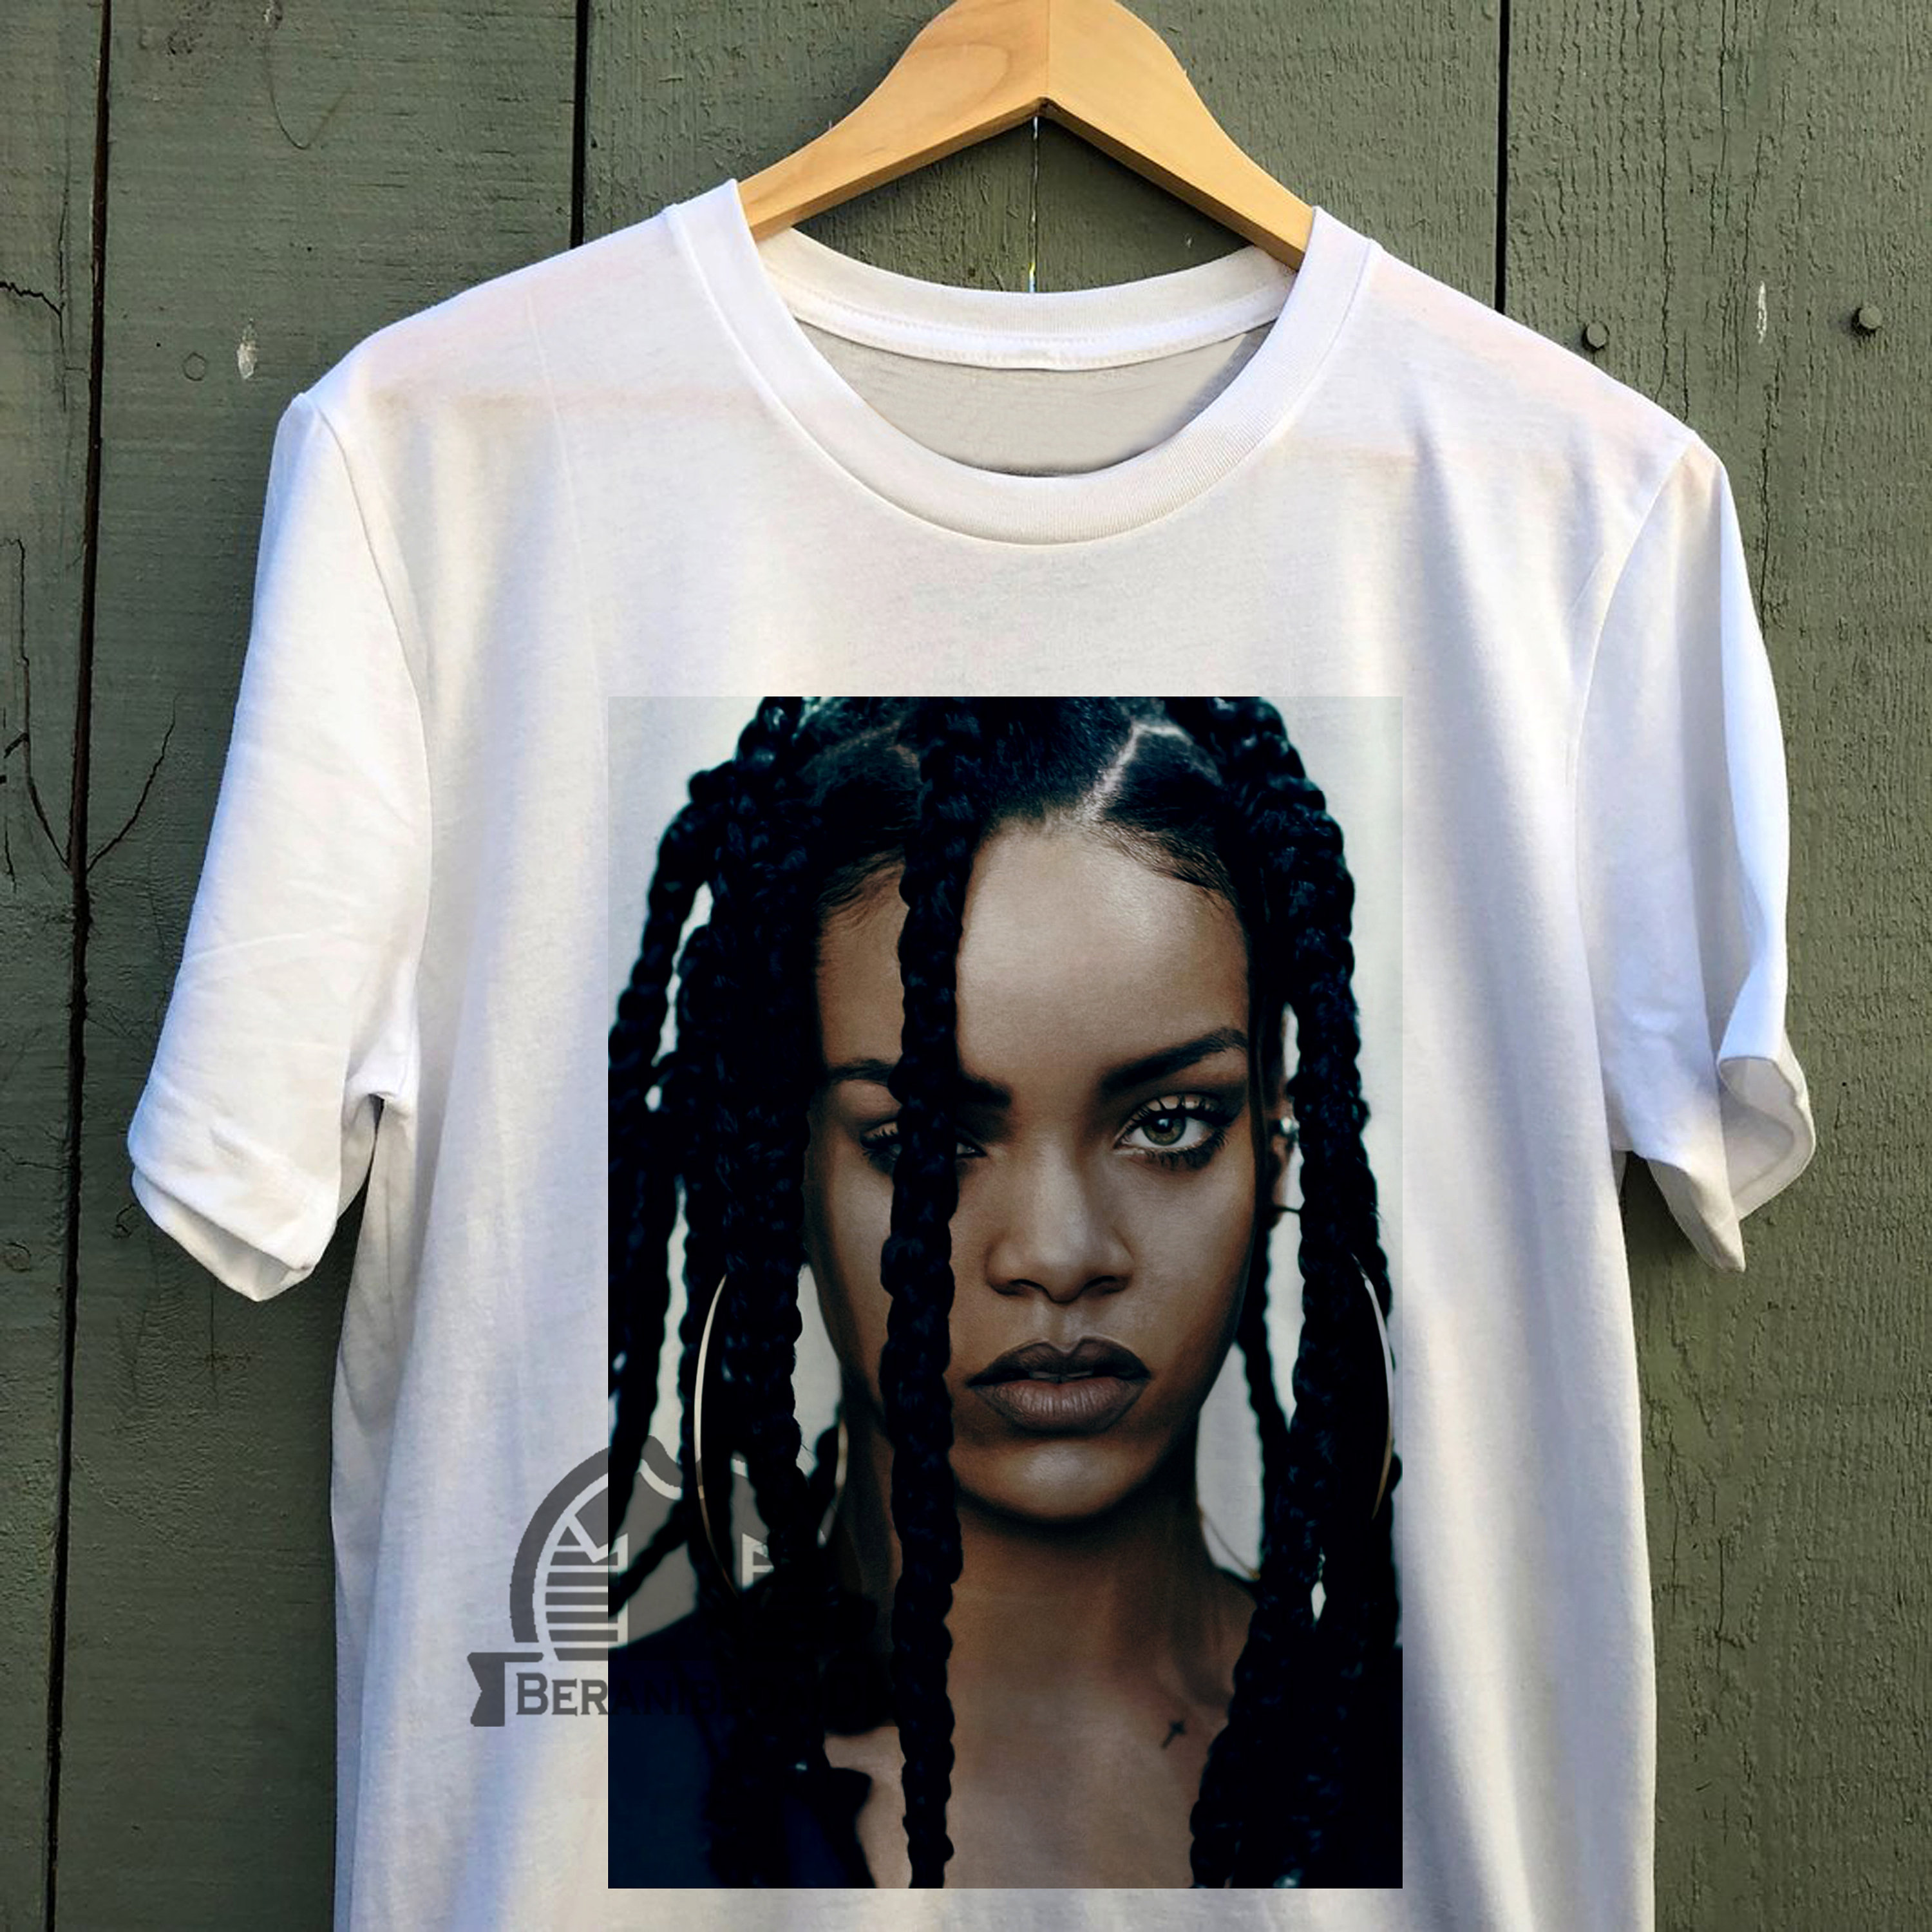 Flipper Dykker Misbruge Rihanna T-shirt Rihanna Style T-shirt Rihanna Unisex T-shirt - Etsy